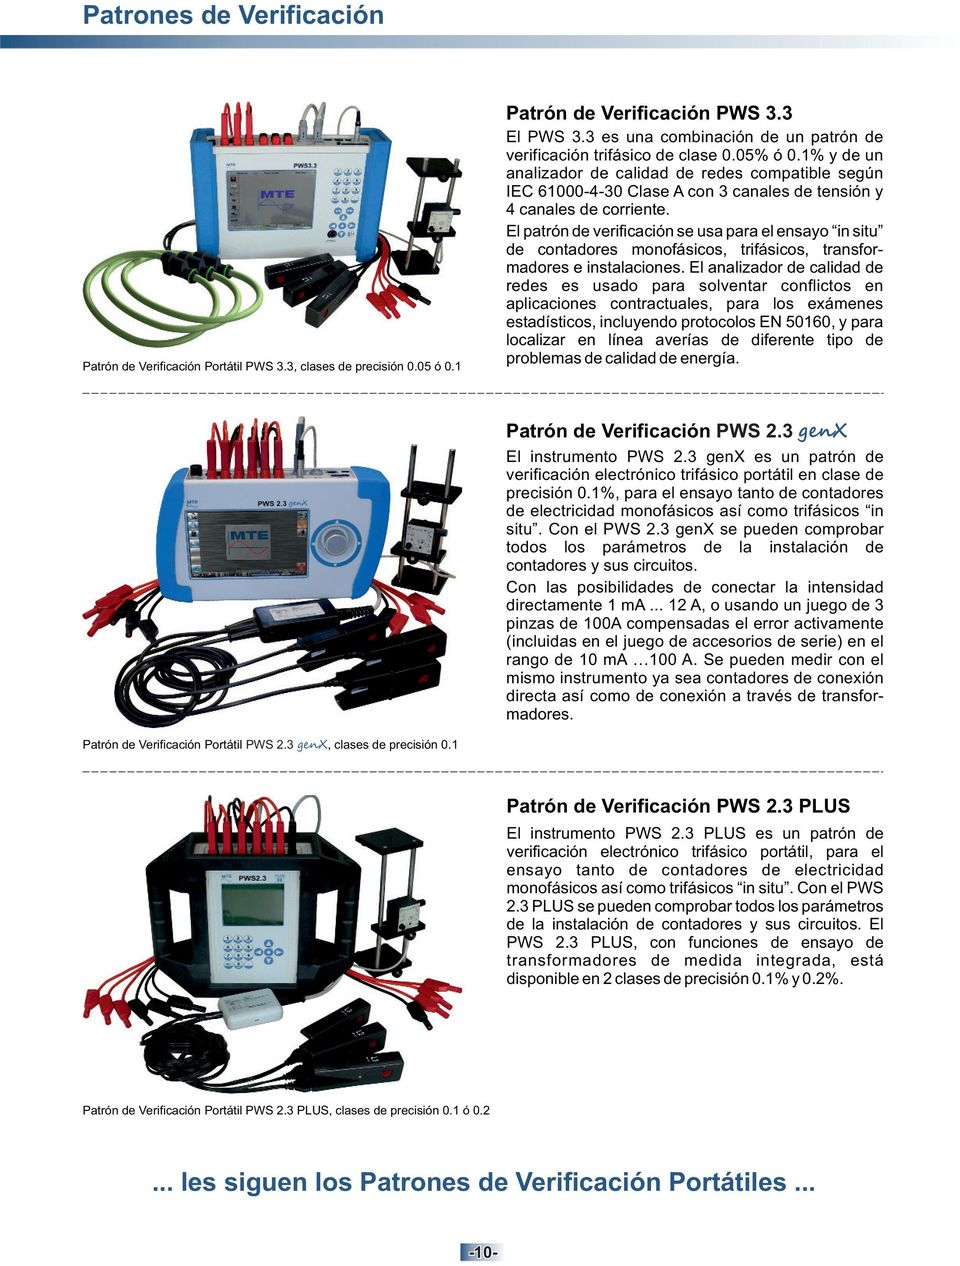 1% y de un analizador de calidad de redes compatible según IEC 61000-4-30 Clase A con 3 canales de tensión y 4 canales de corriente.